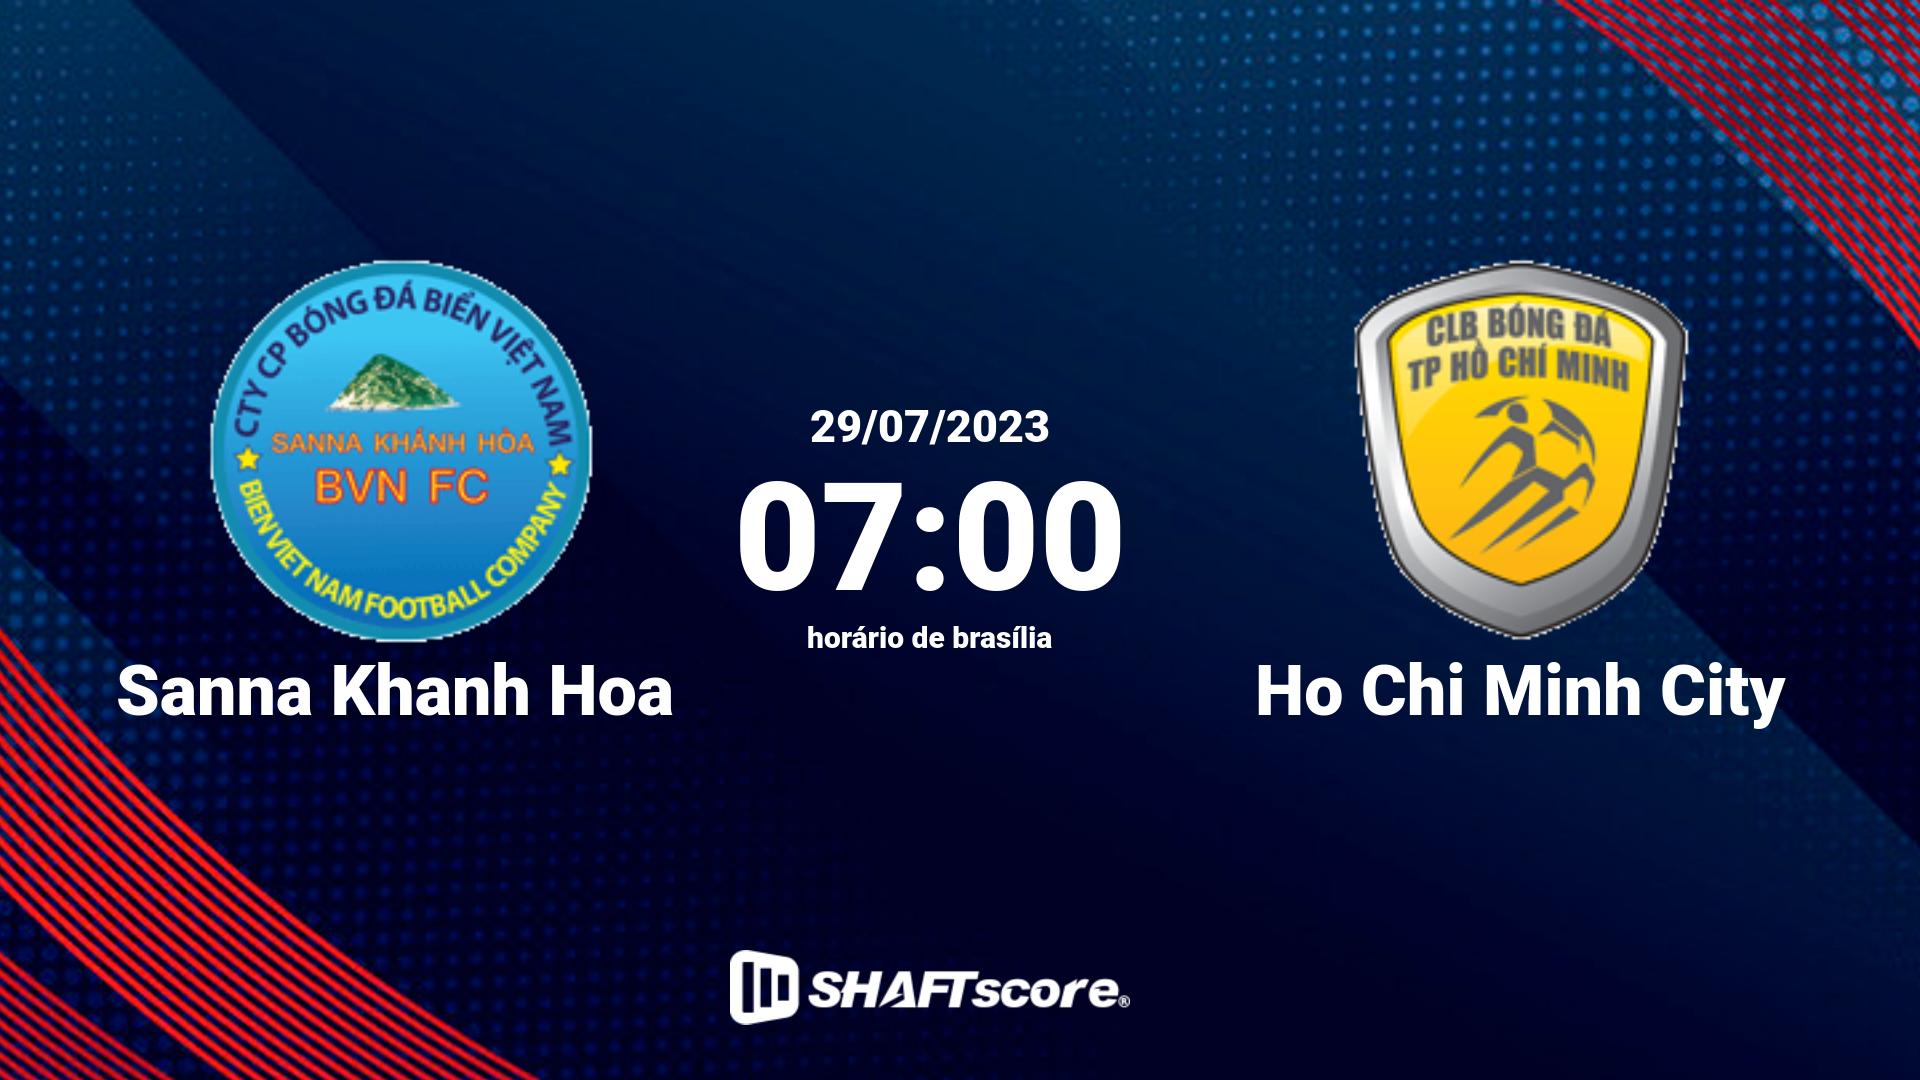 Estatísticas do jogo Sanna Khanh Hoa vs Ho Chi Minh City 29.07 07:00